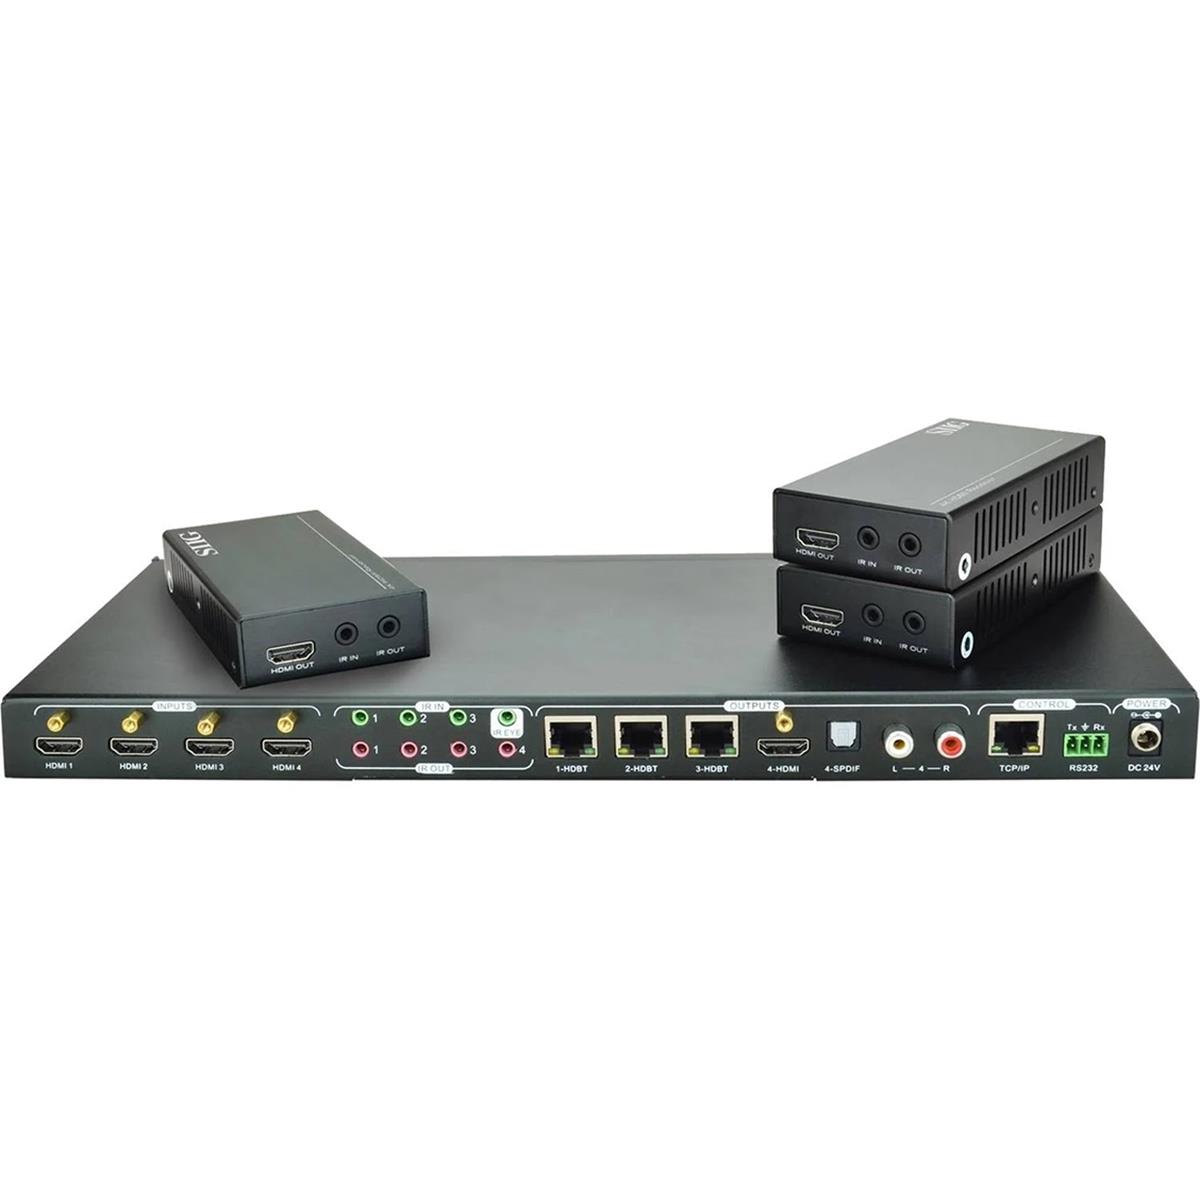 SIIG 4x4 4K HDMI HDBaseT Matrix Switcher Kit with 3x HDBaseT Receivers -  CE-H23W11-S1